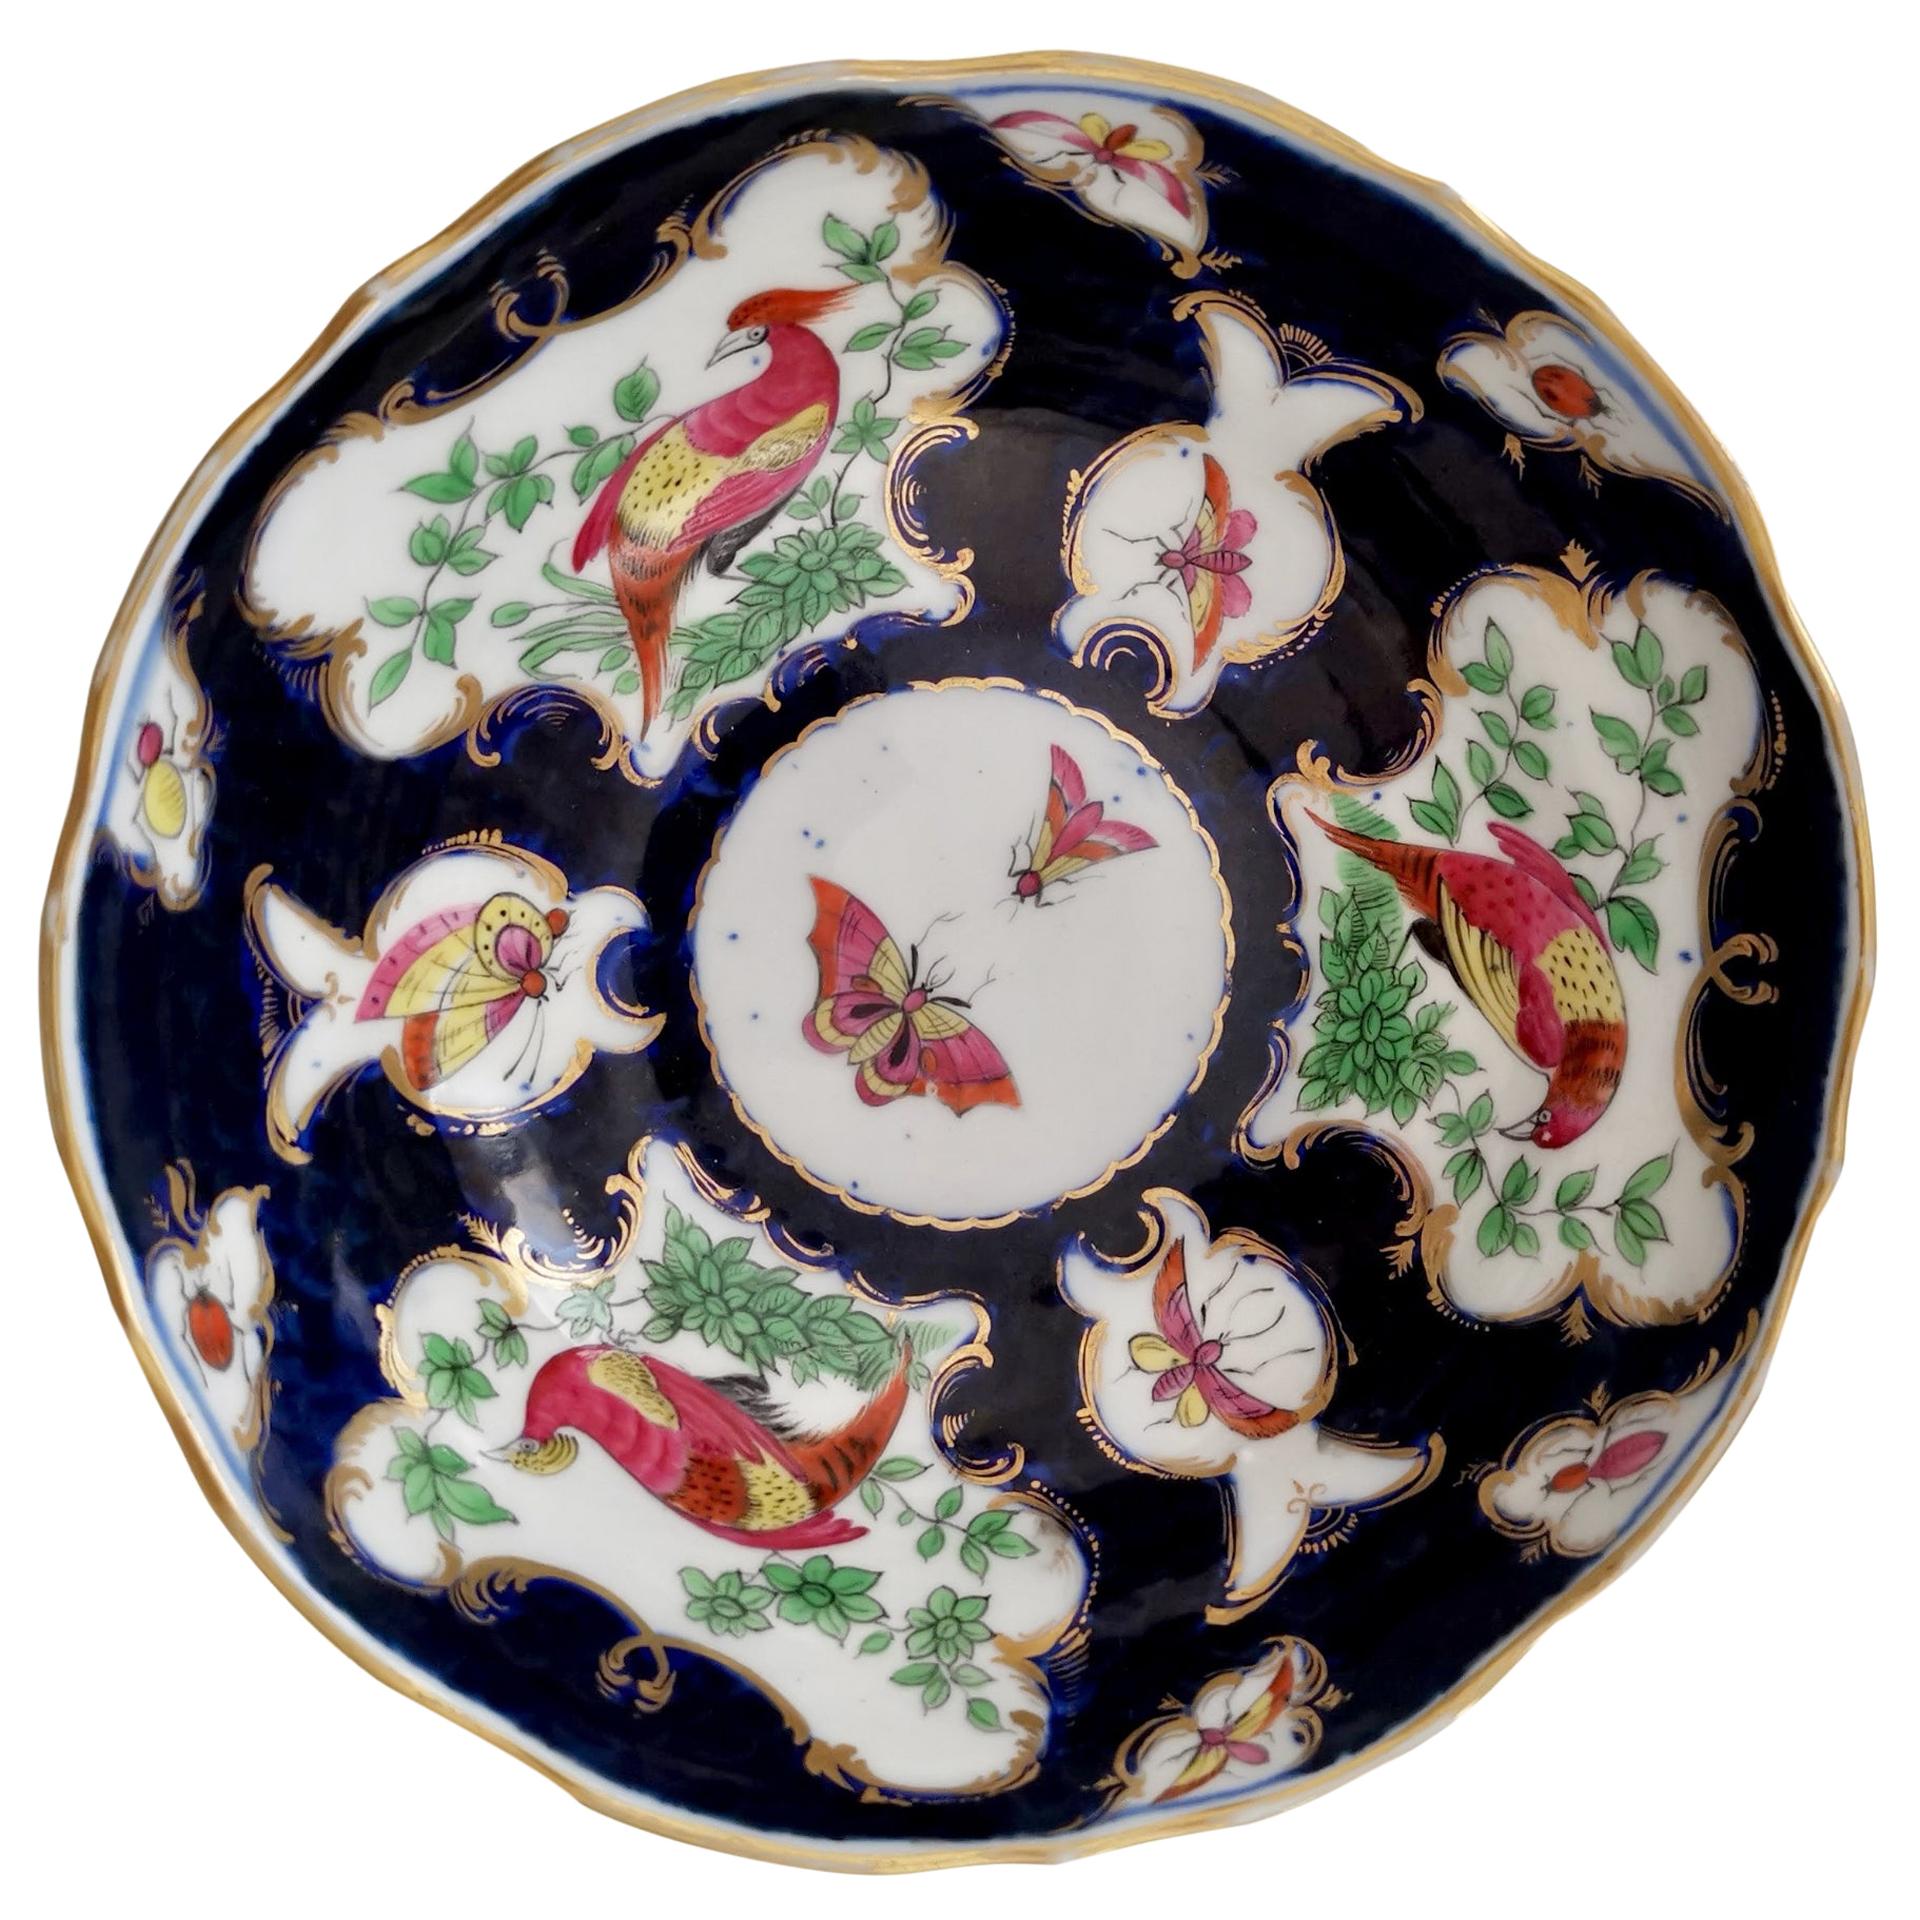 Edmé Samson Small Porcelain Bowl, Worcester Style Blue Scale Birds, 19thC